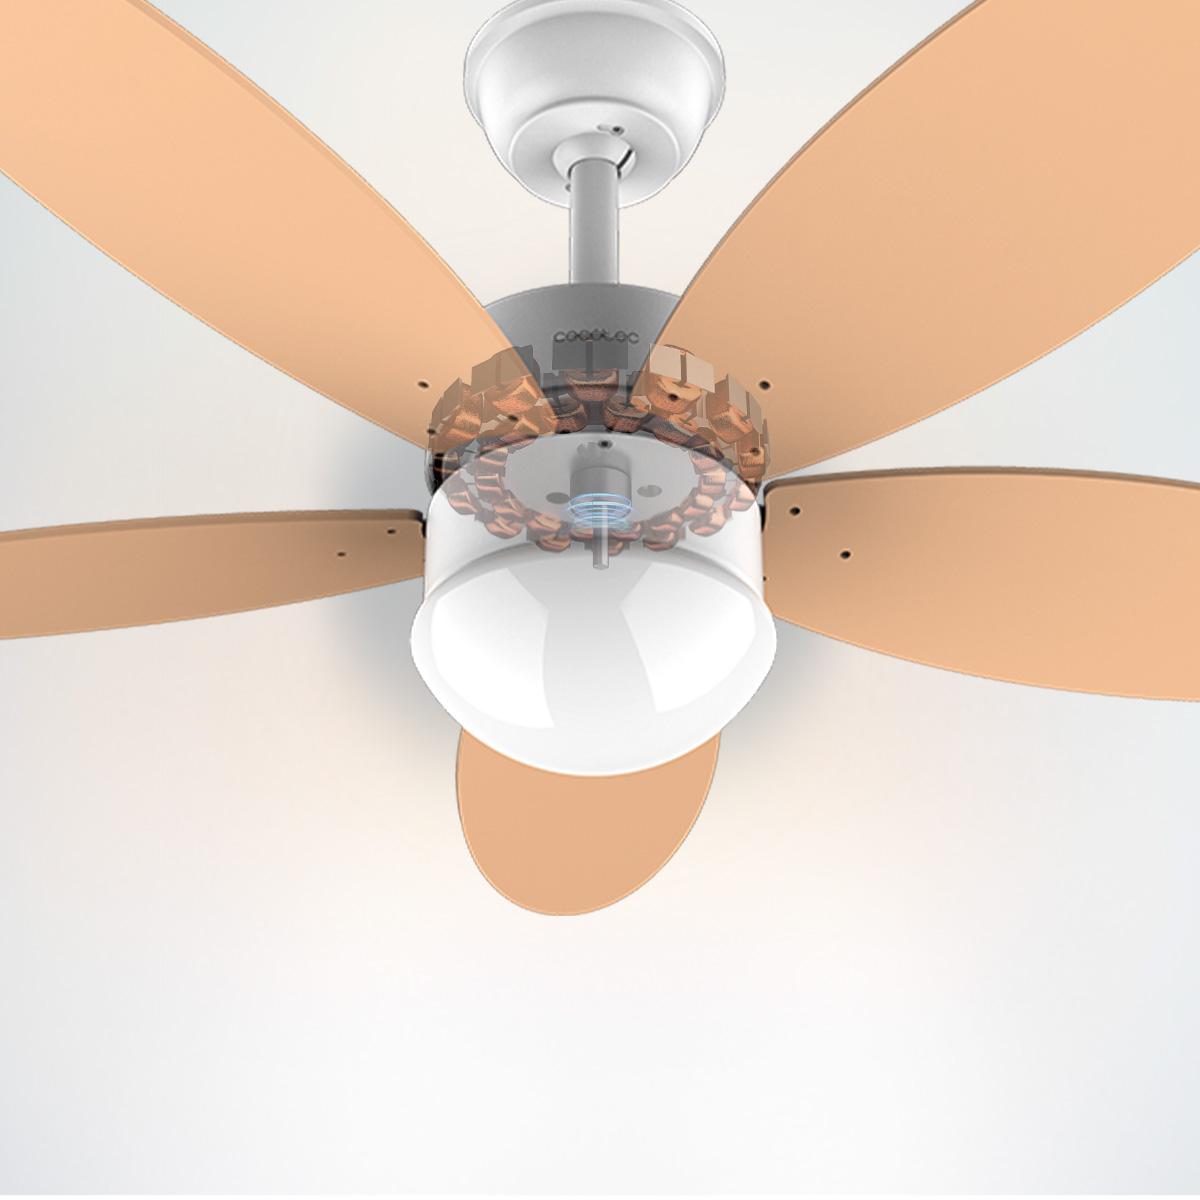 Cecotec ventilador de techo con luz energysilence aero 4260 orange. 40 w, m